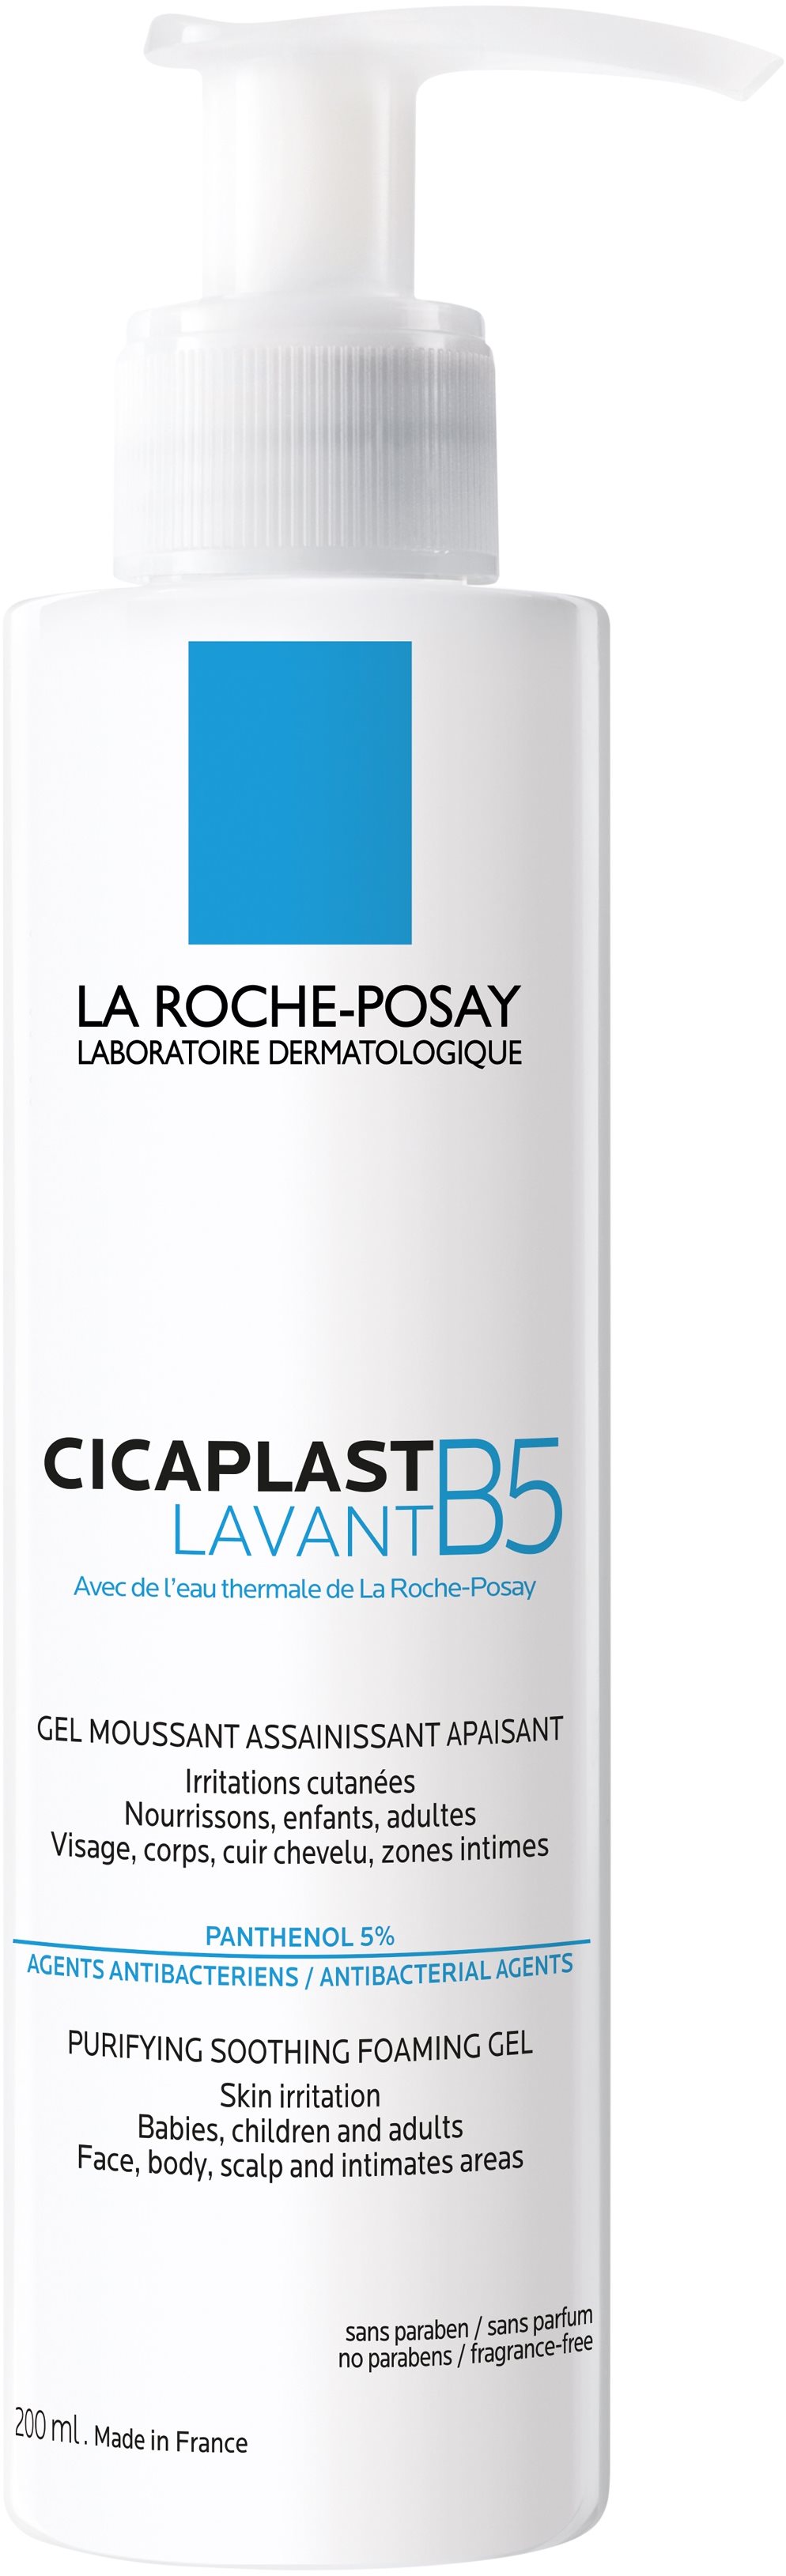 LA ROCHE-POSAY CICAPLAST Lavant B5 tisztító nyugtató habgél 200 ml